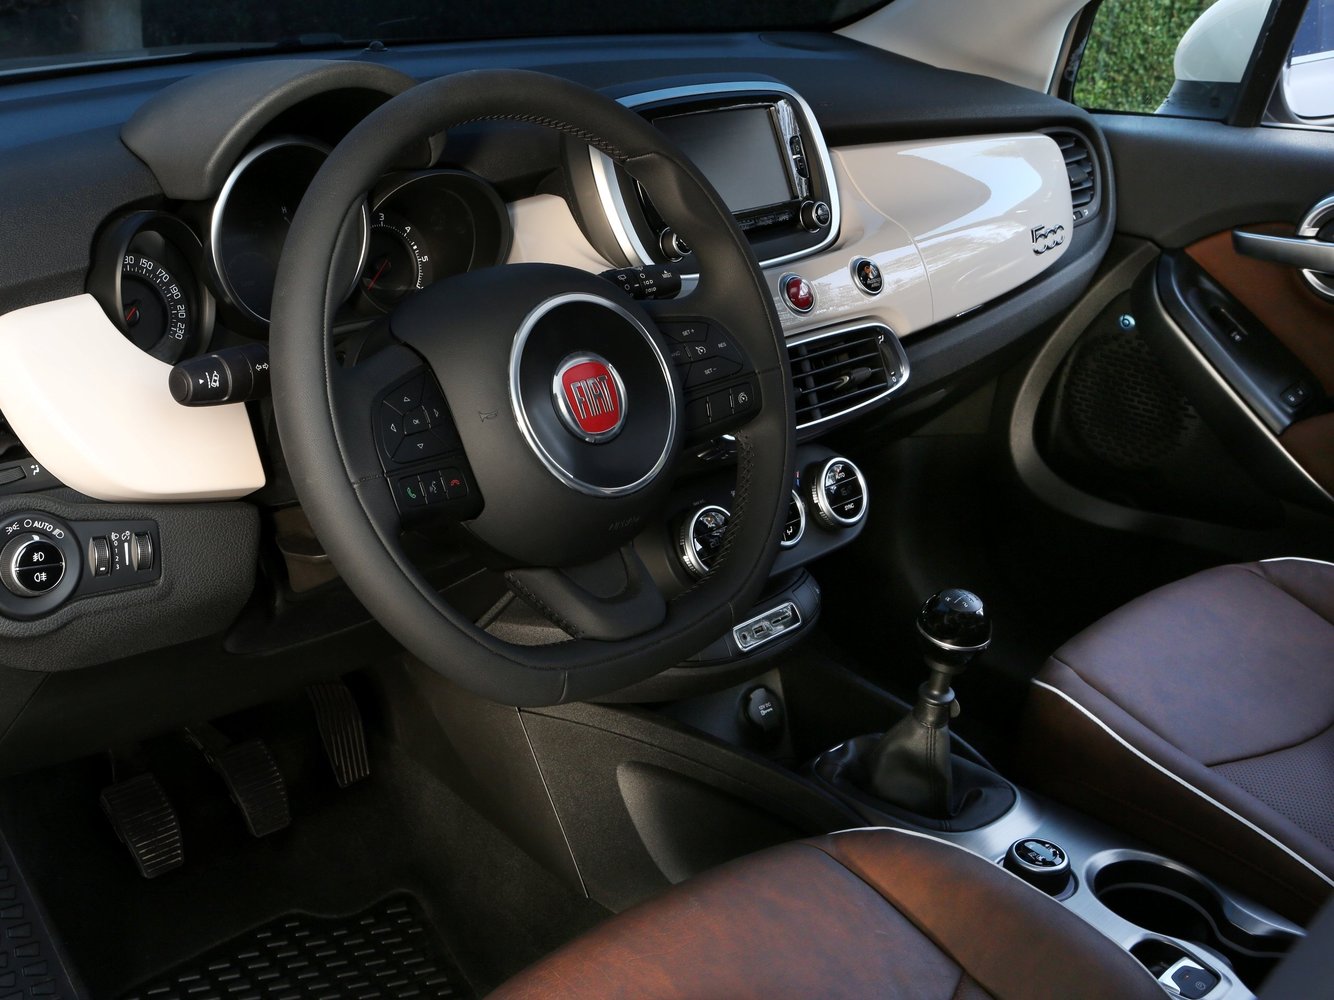 кроссовер Fiat 500X 2014 - 2016г выпуска модификация 1.4 AT (170 л.с.) 4×4